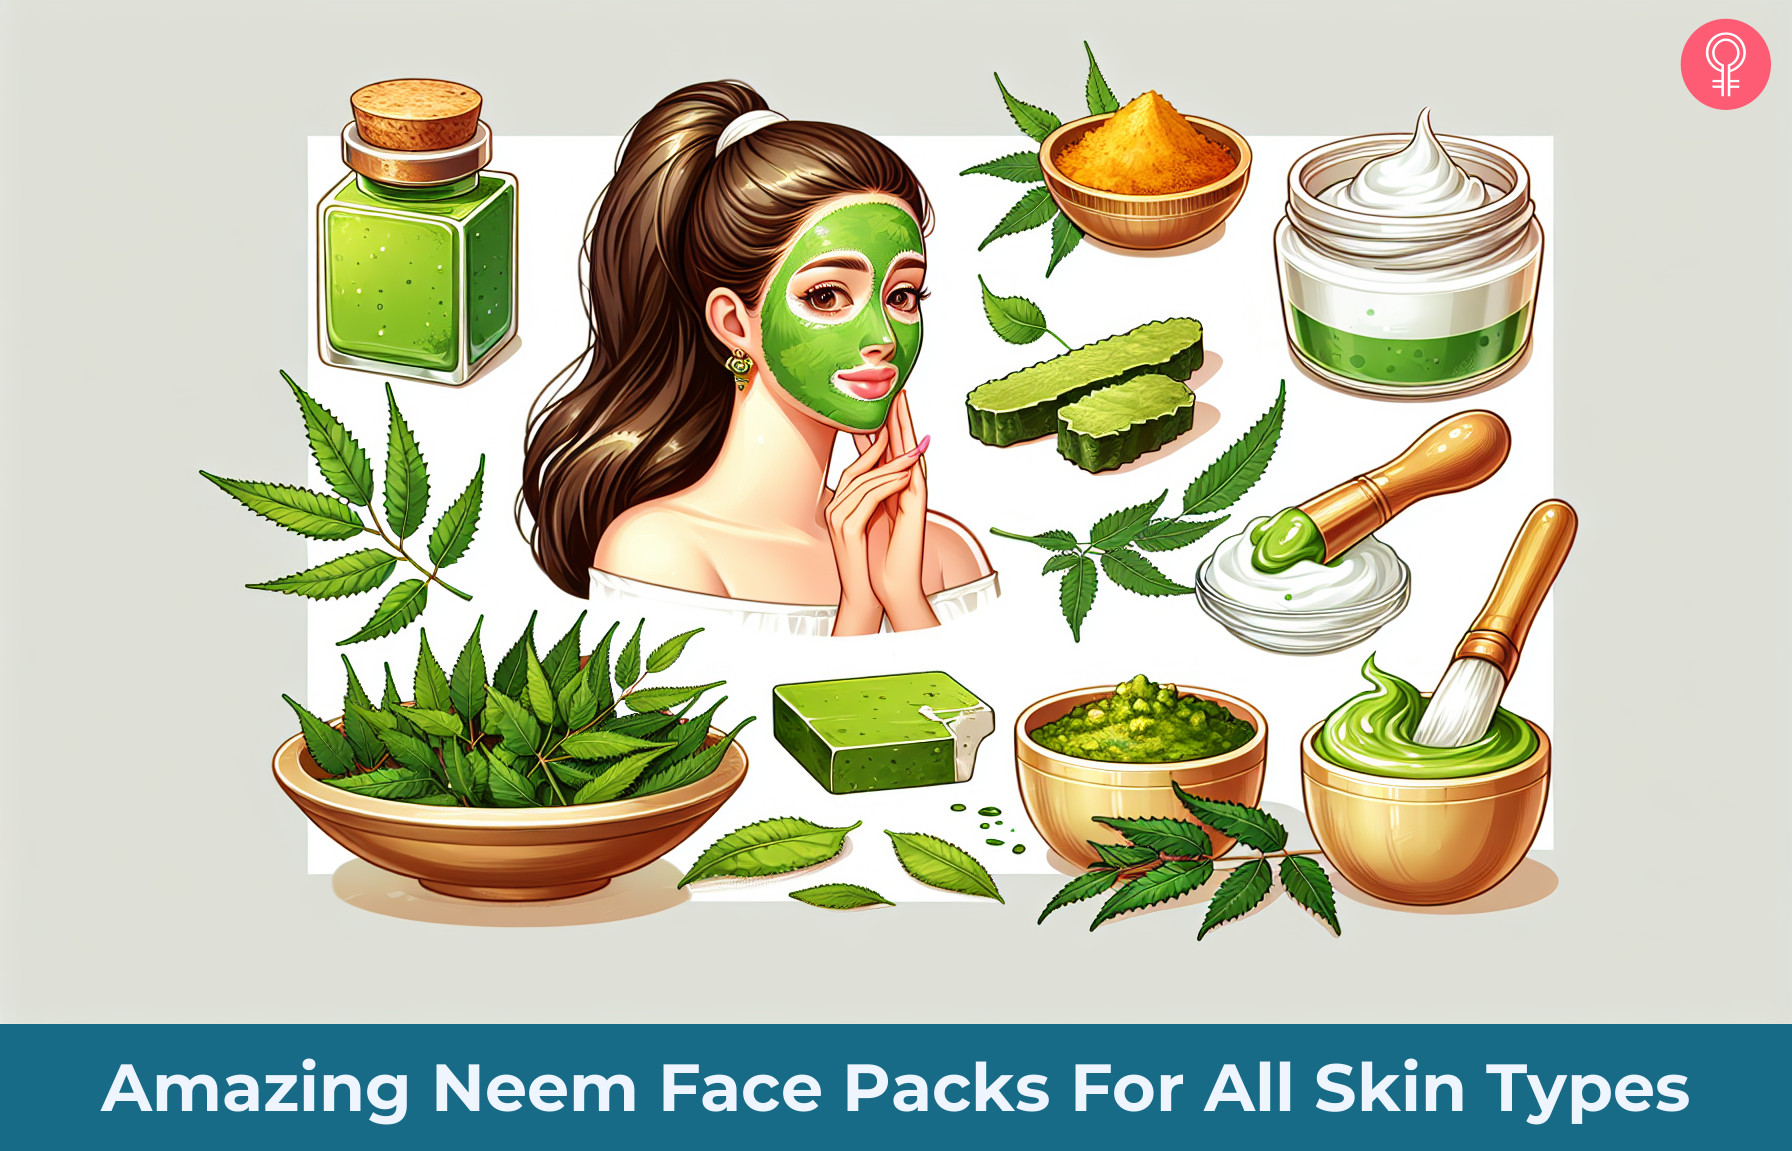 neem face packs_illustration